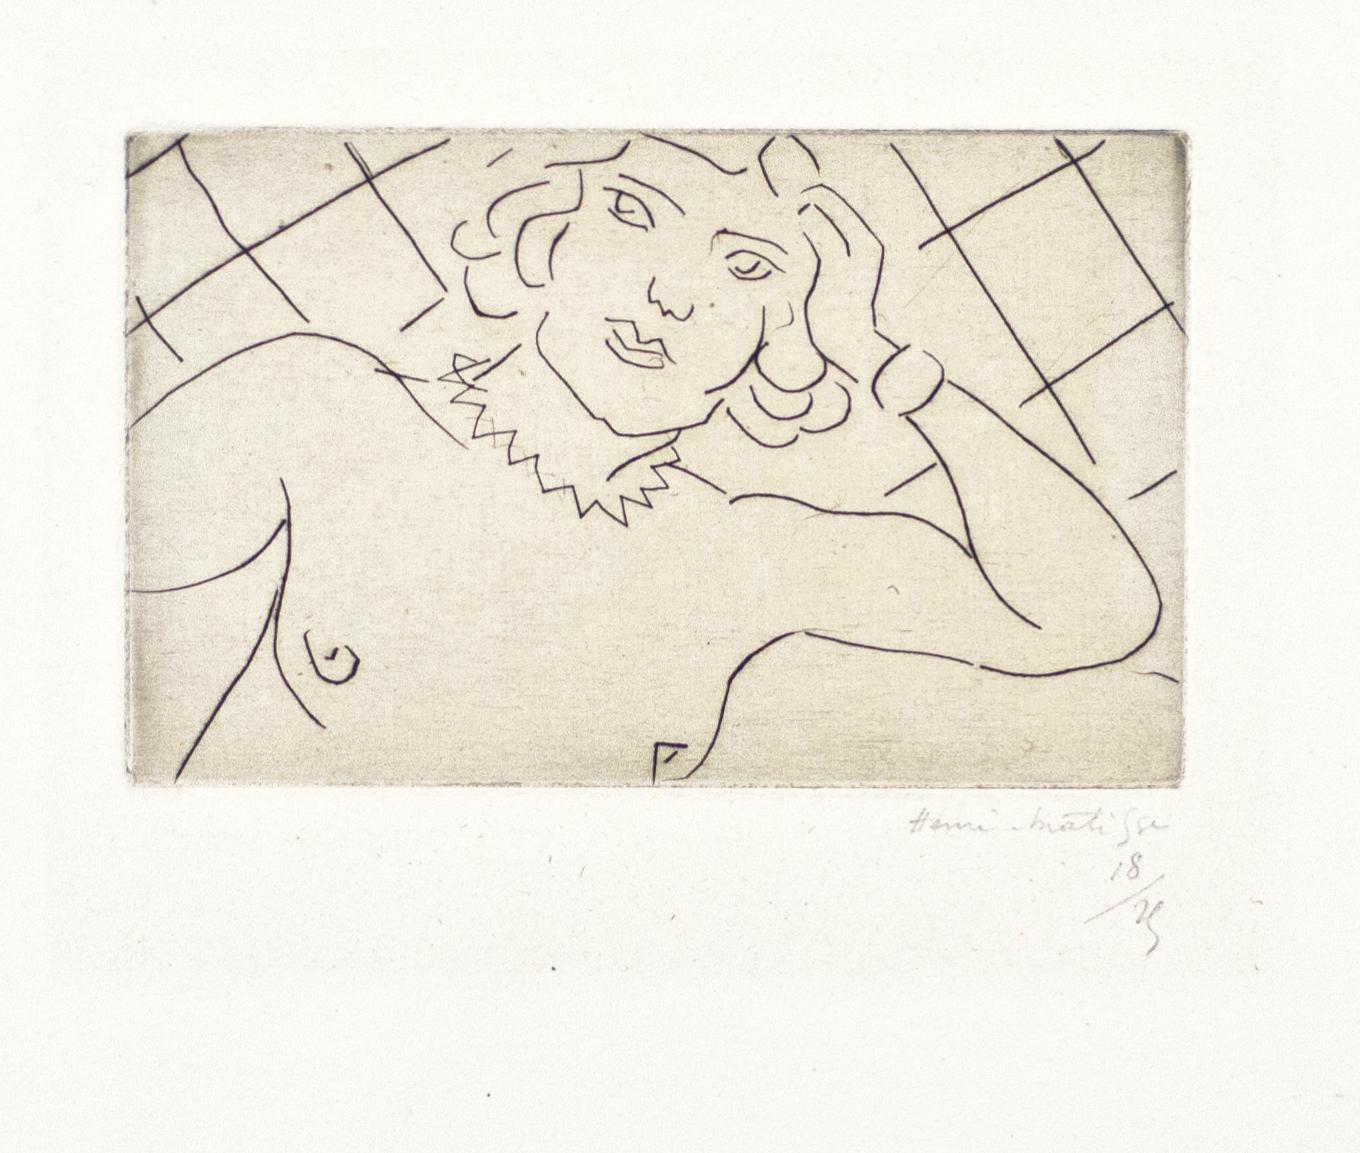 Torse, Fond à Losanges - Pointe sèche sur Chine par H. Matisse, 1929